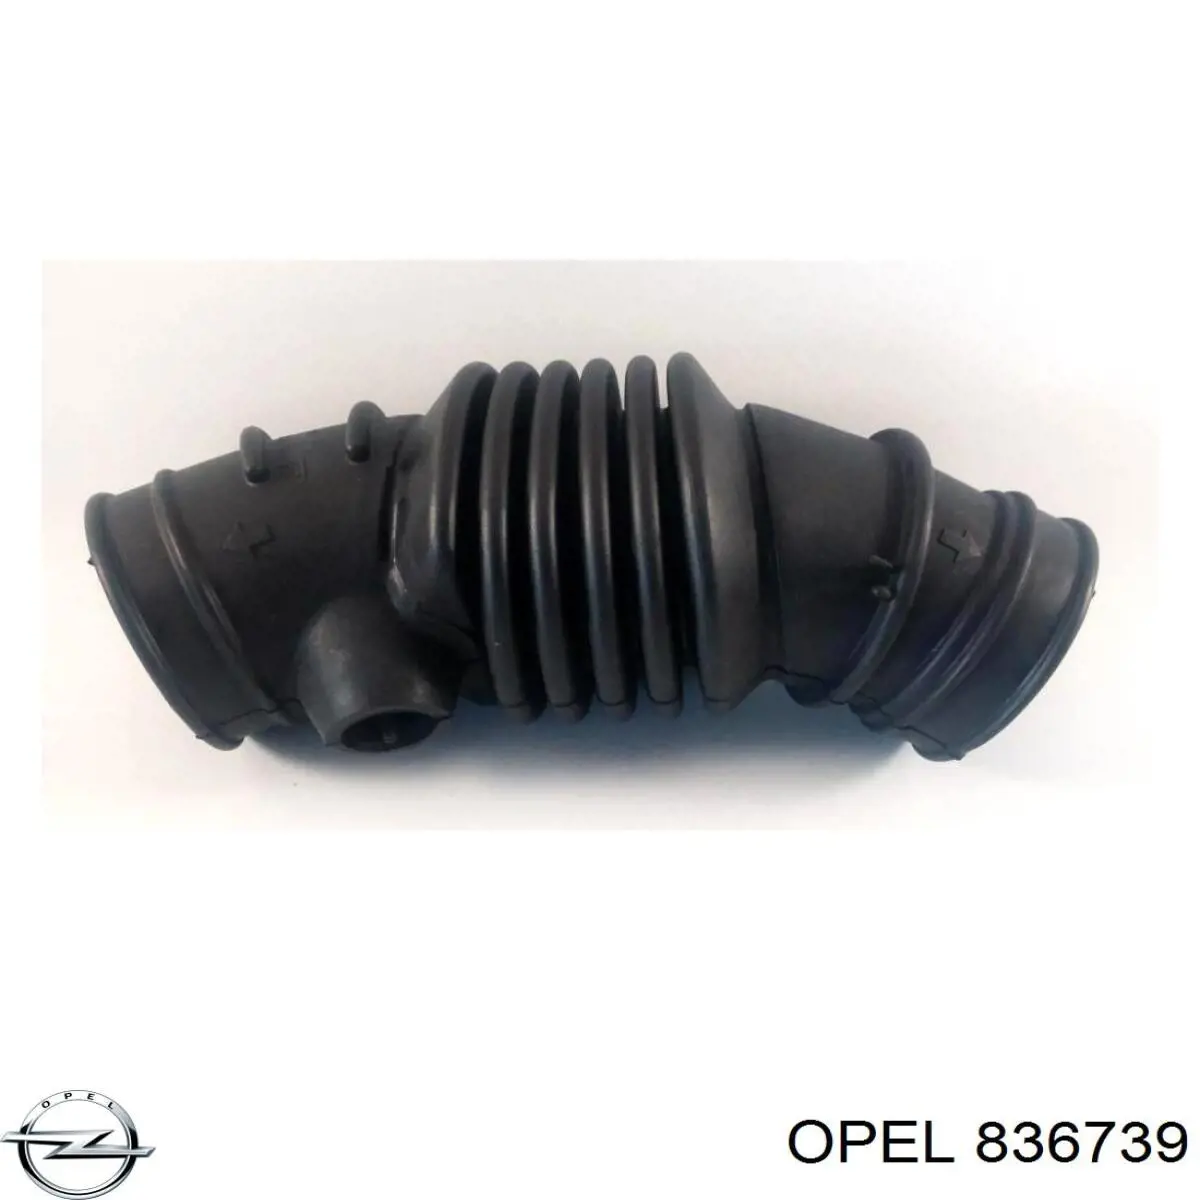 836739 Opel tubo flexible de aspiración, salida del filtro de aire